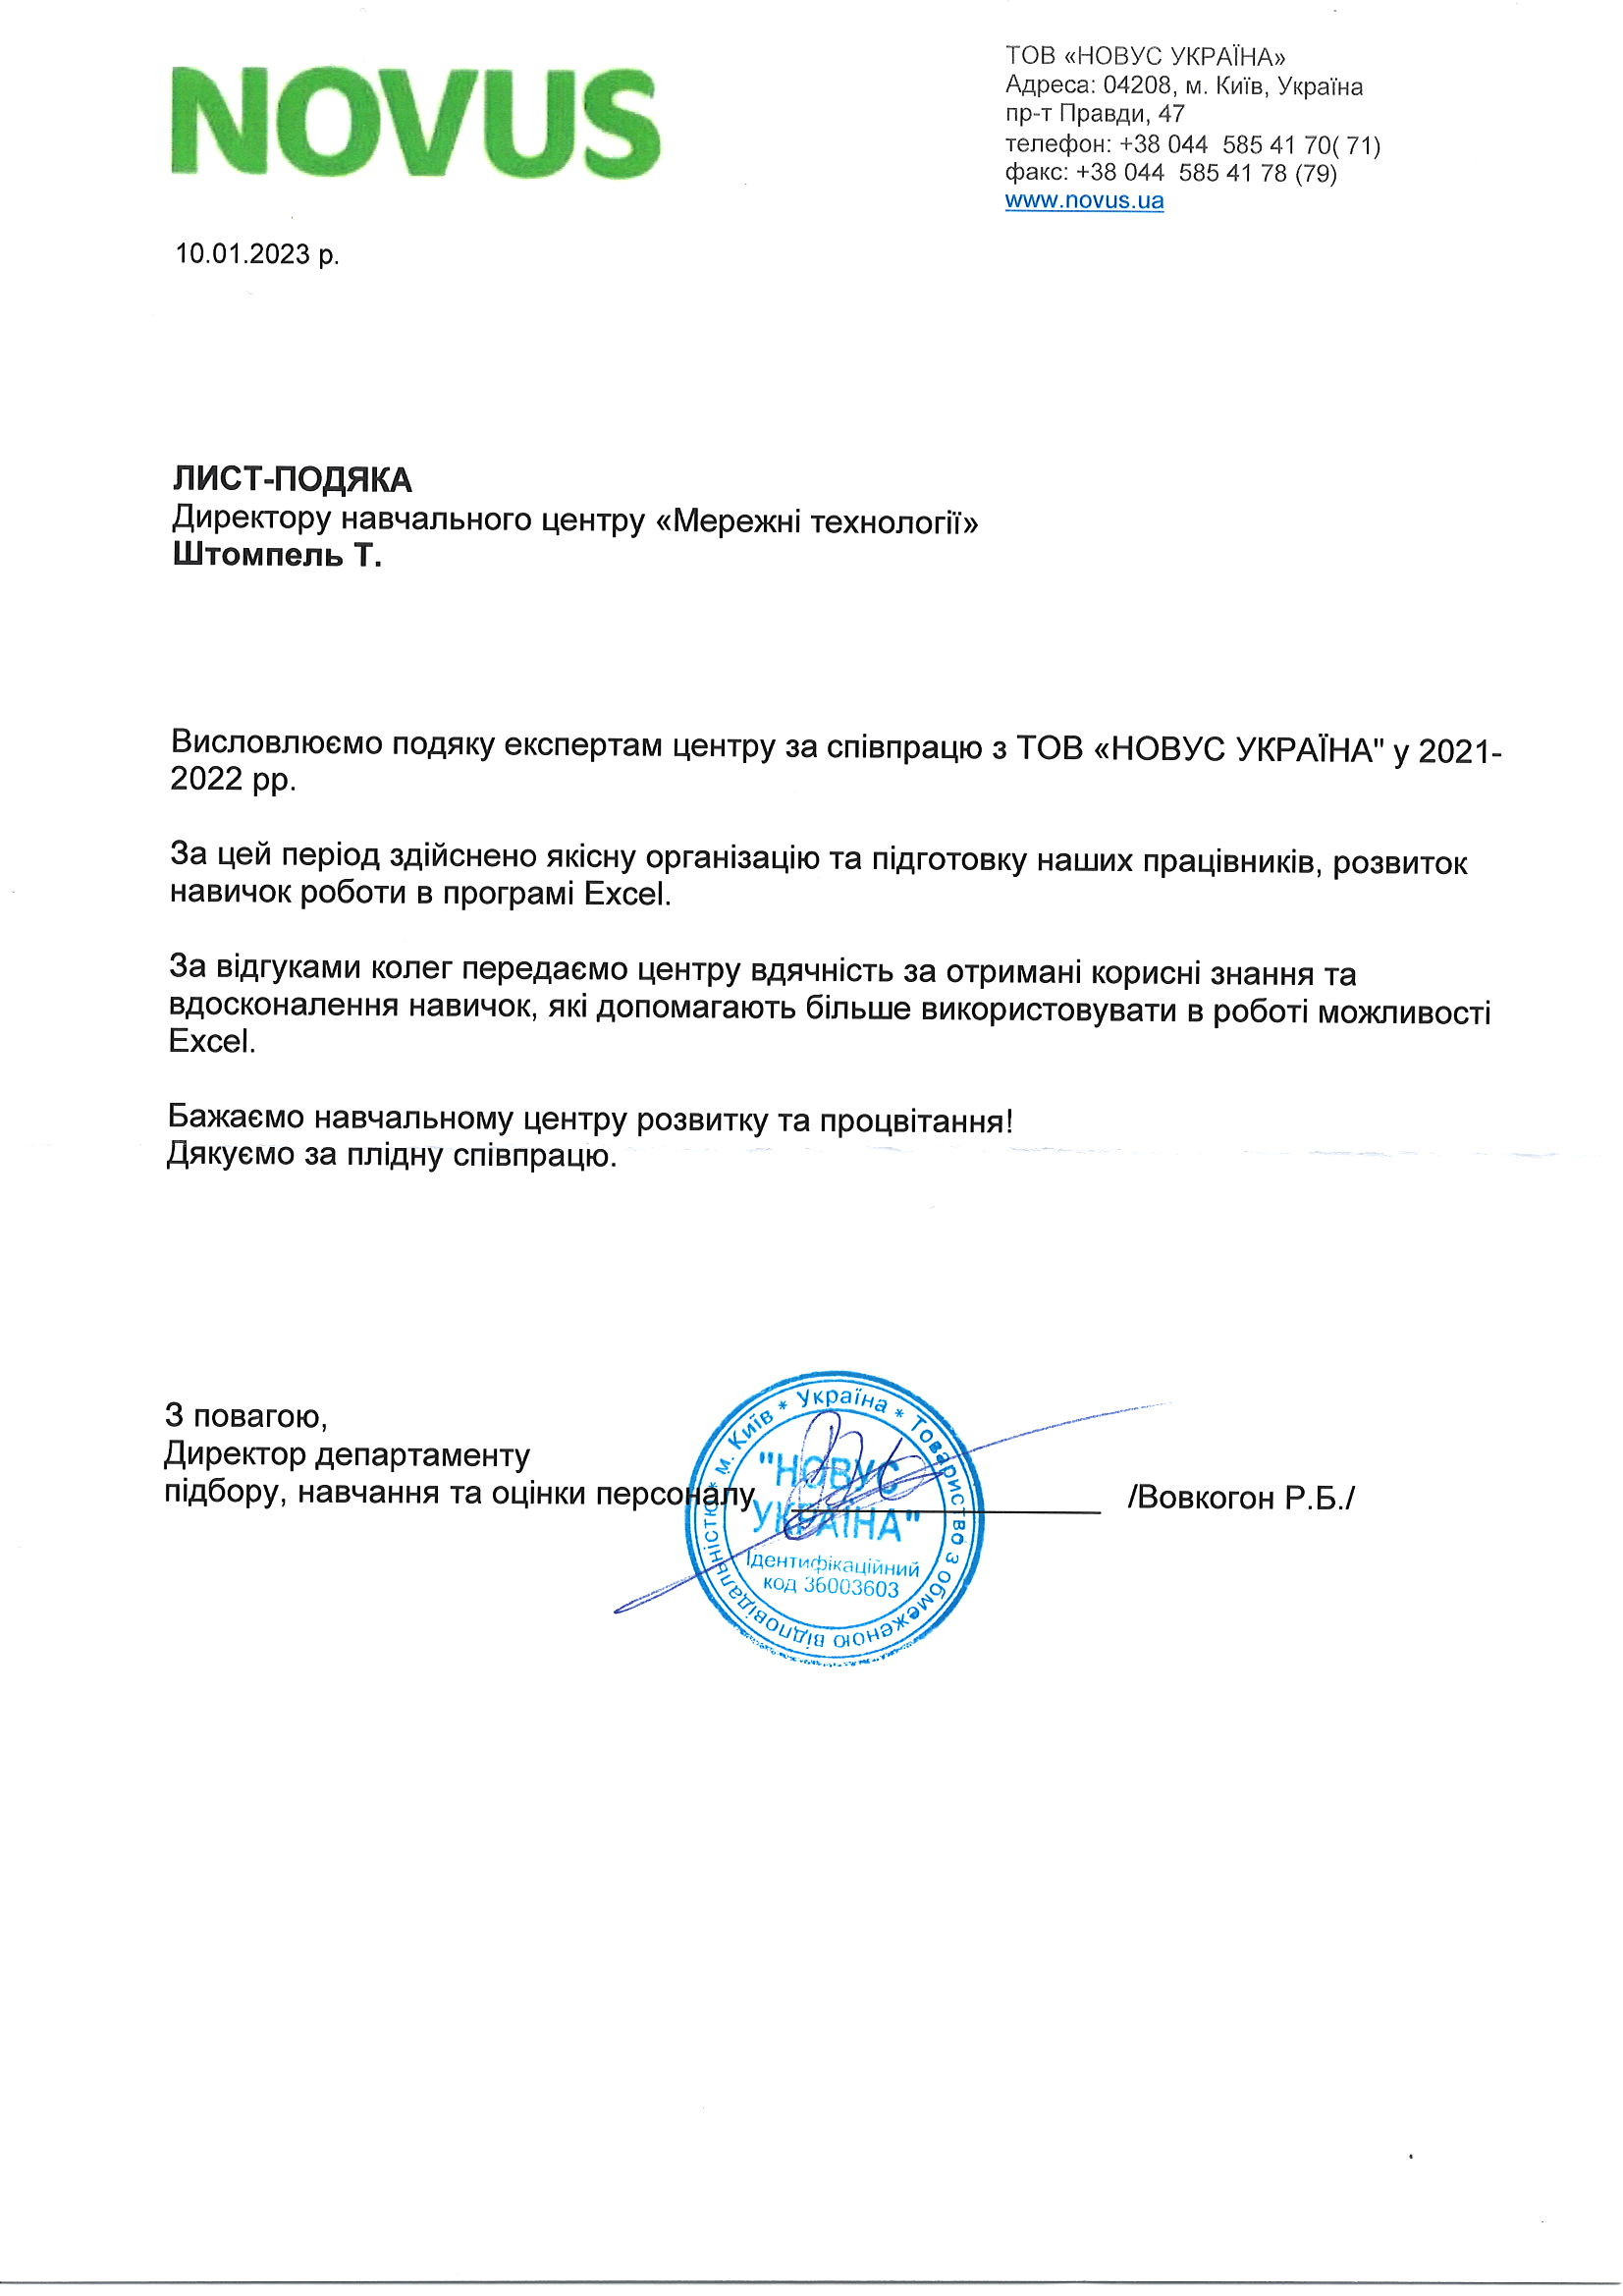 Відгук компанії ООО «Новус Украина» про НЦ Мережні Технології, 2023 р.